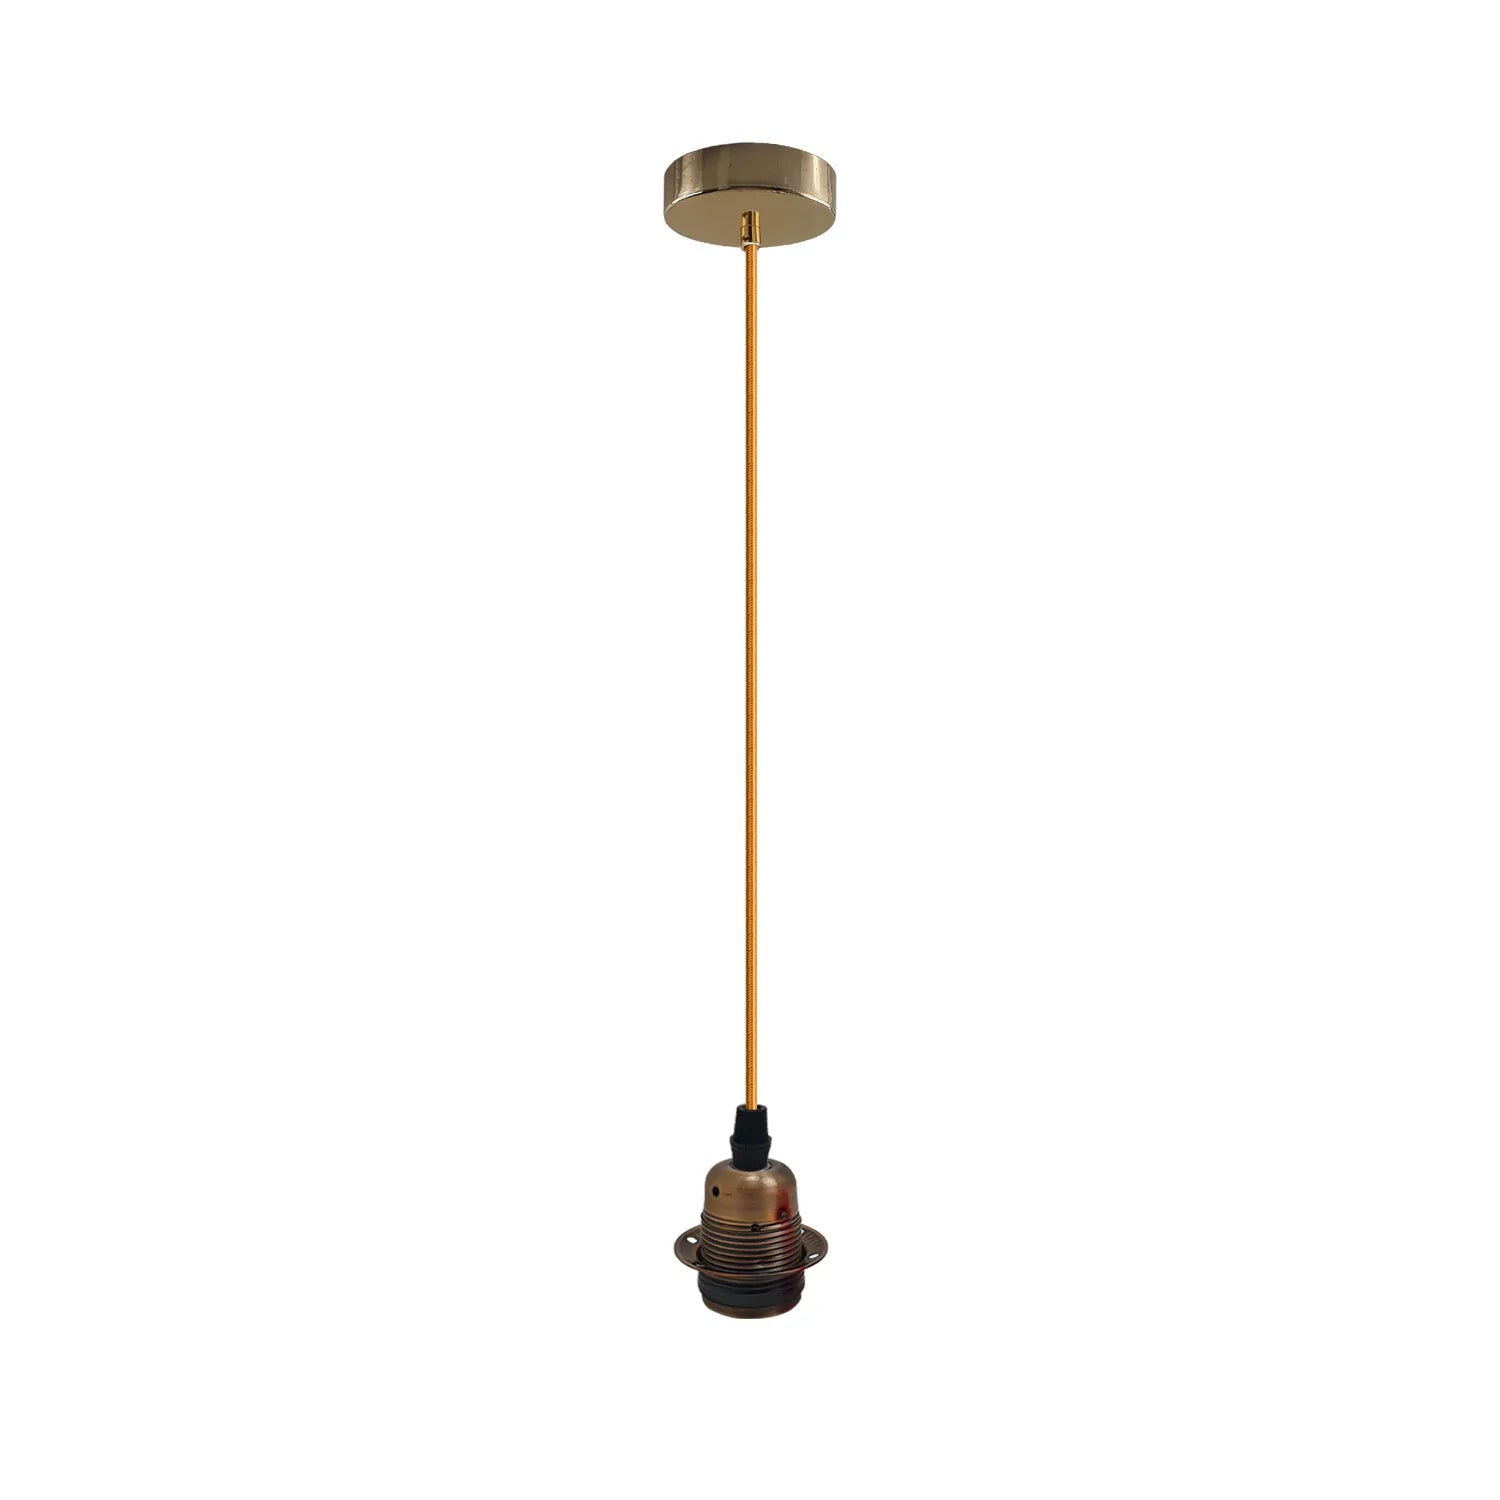 Vintage Industrial Pendant Light,Lamp Holder Ceiling Hanging Light~4263